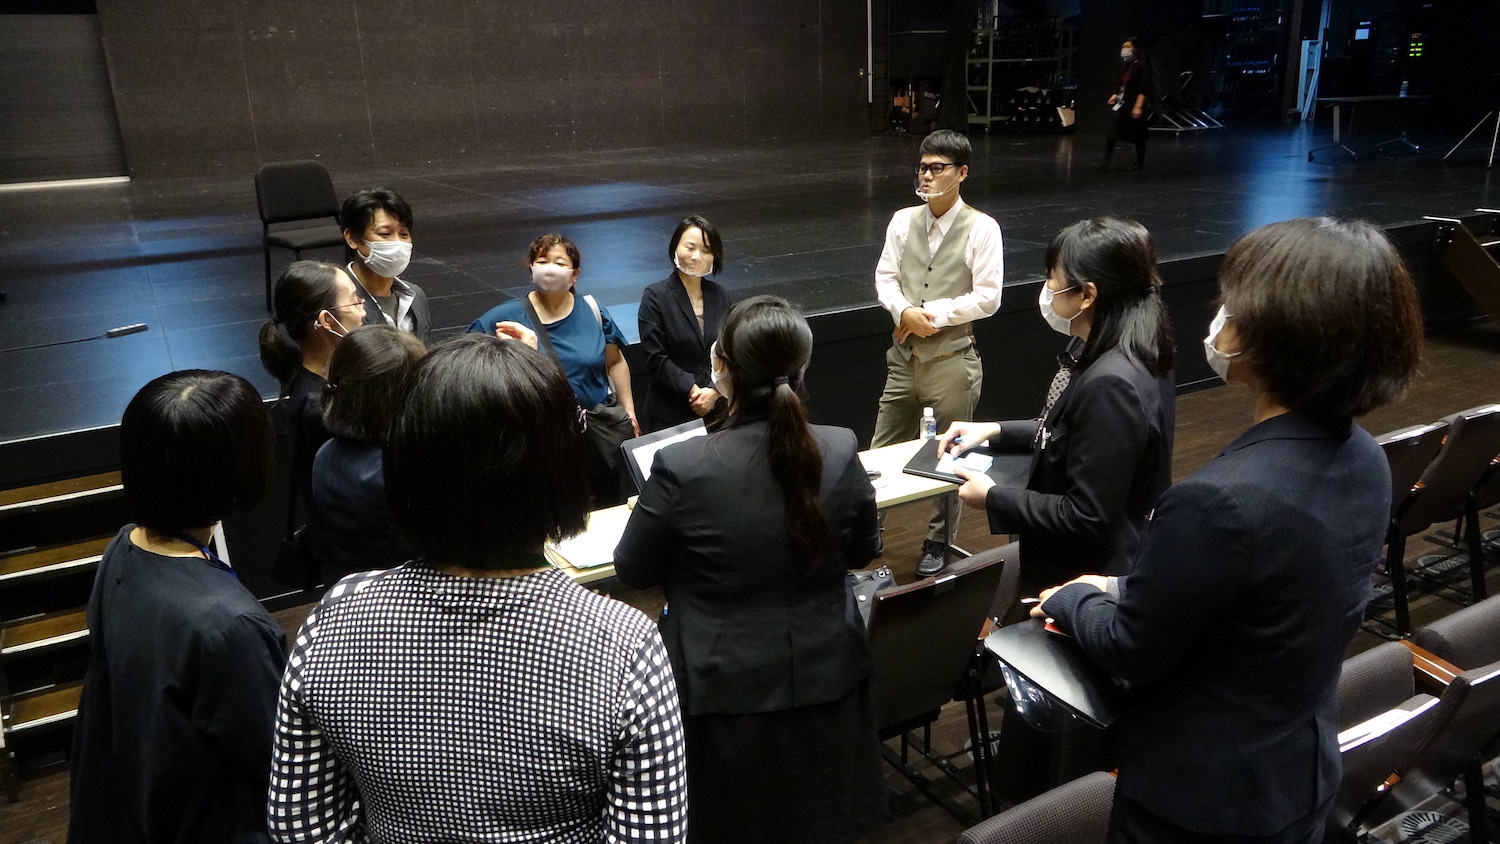 ロームシアター京都で、講演終了後にみんなで集まって話し合っている様子の写真です。廣川さんや劇場の方、ろう者の方々など、合計11名でディスカッションを行っています